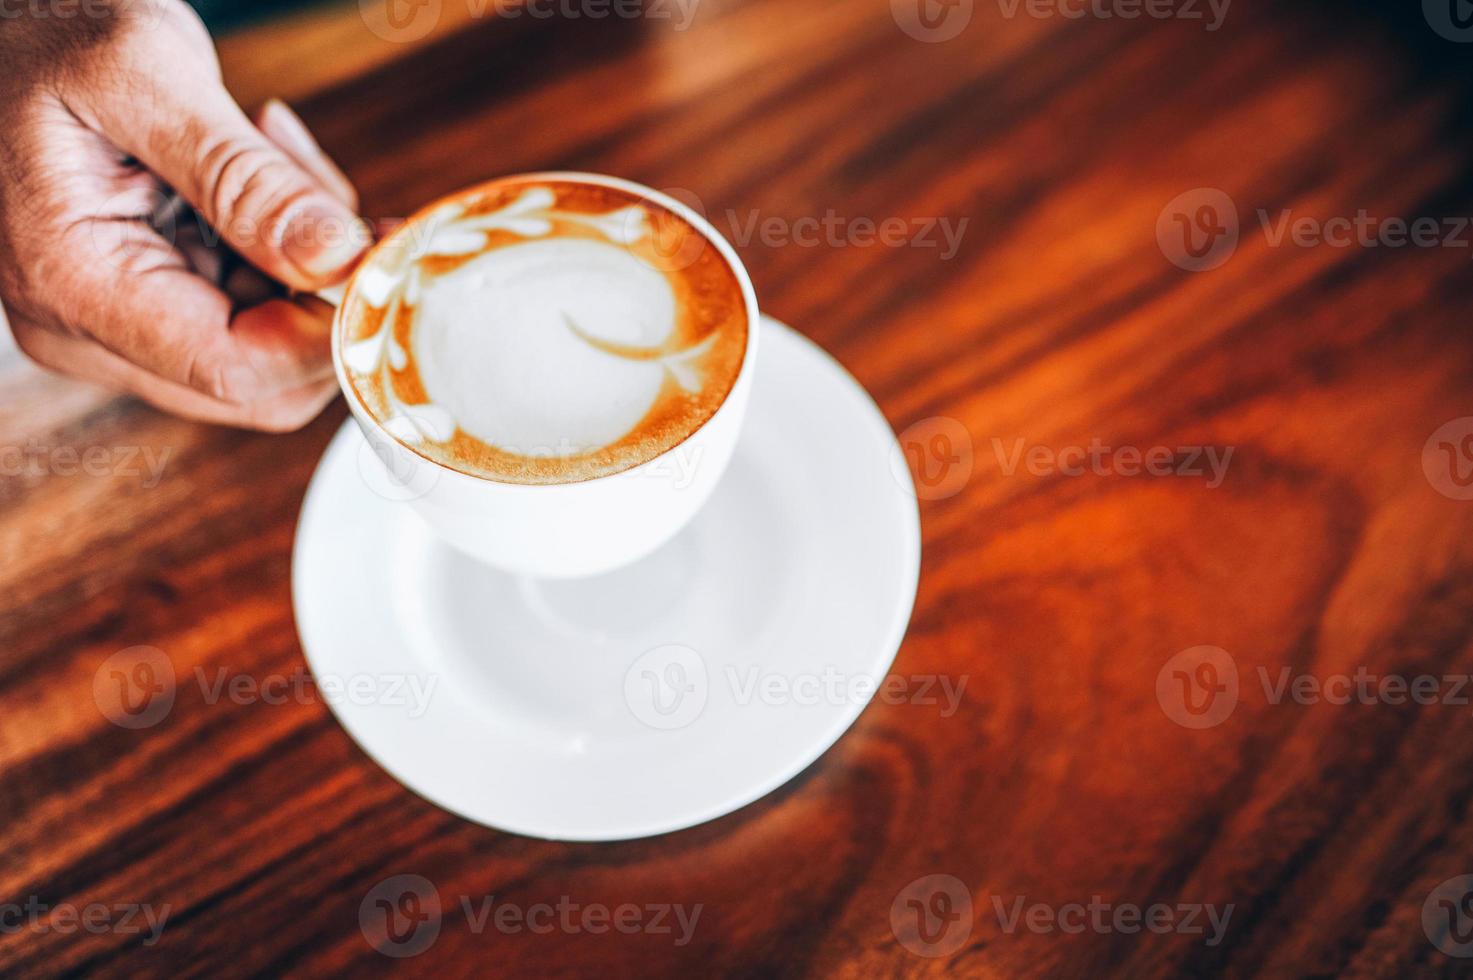 mani e caffè di amanti del caffè caldo al mattino caldo espresso mattina che molte persone amano. foto